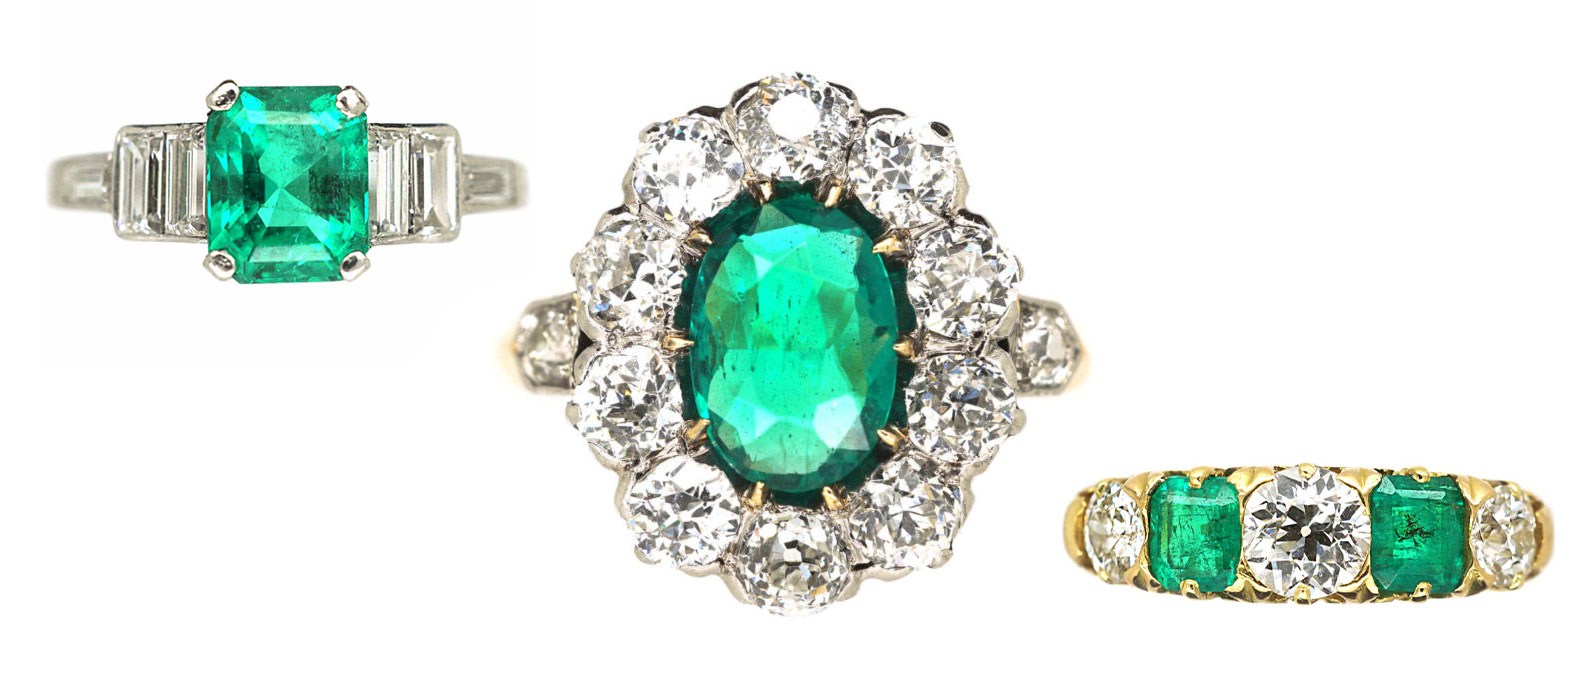 Antique emerald rings